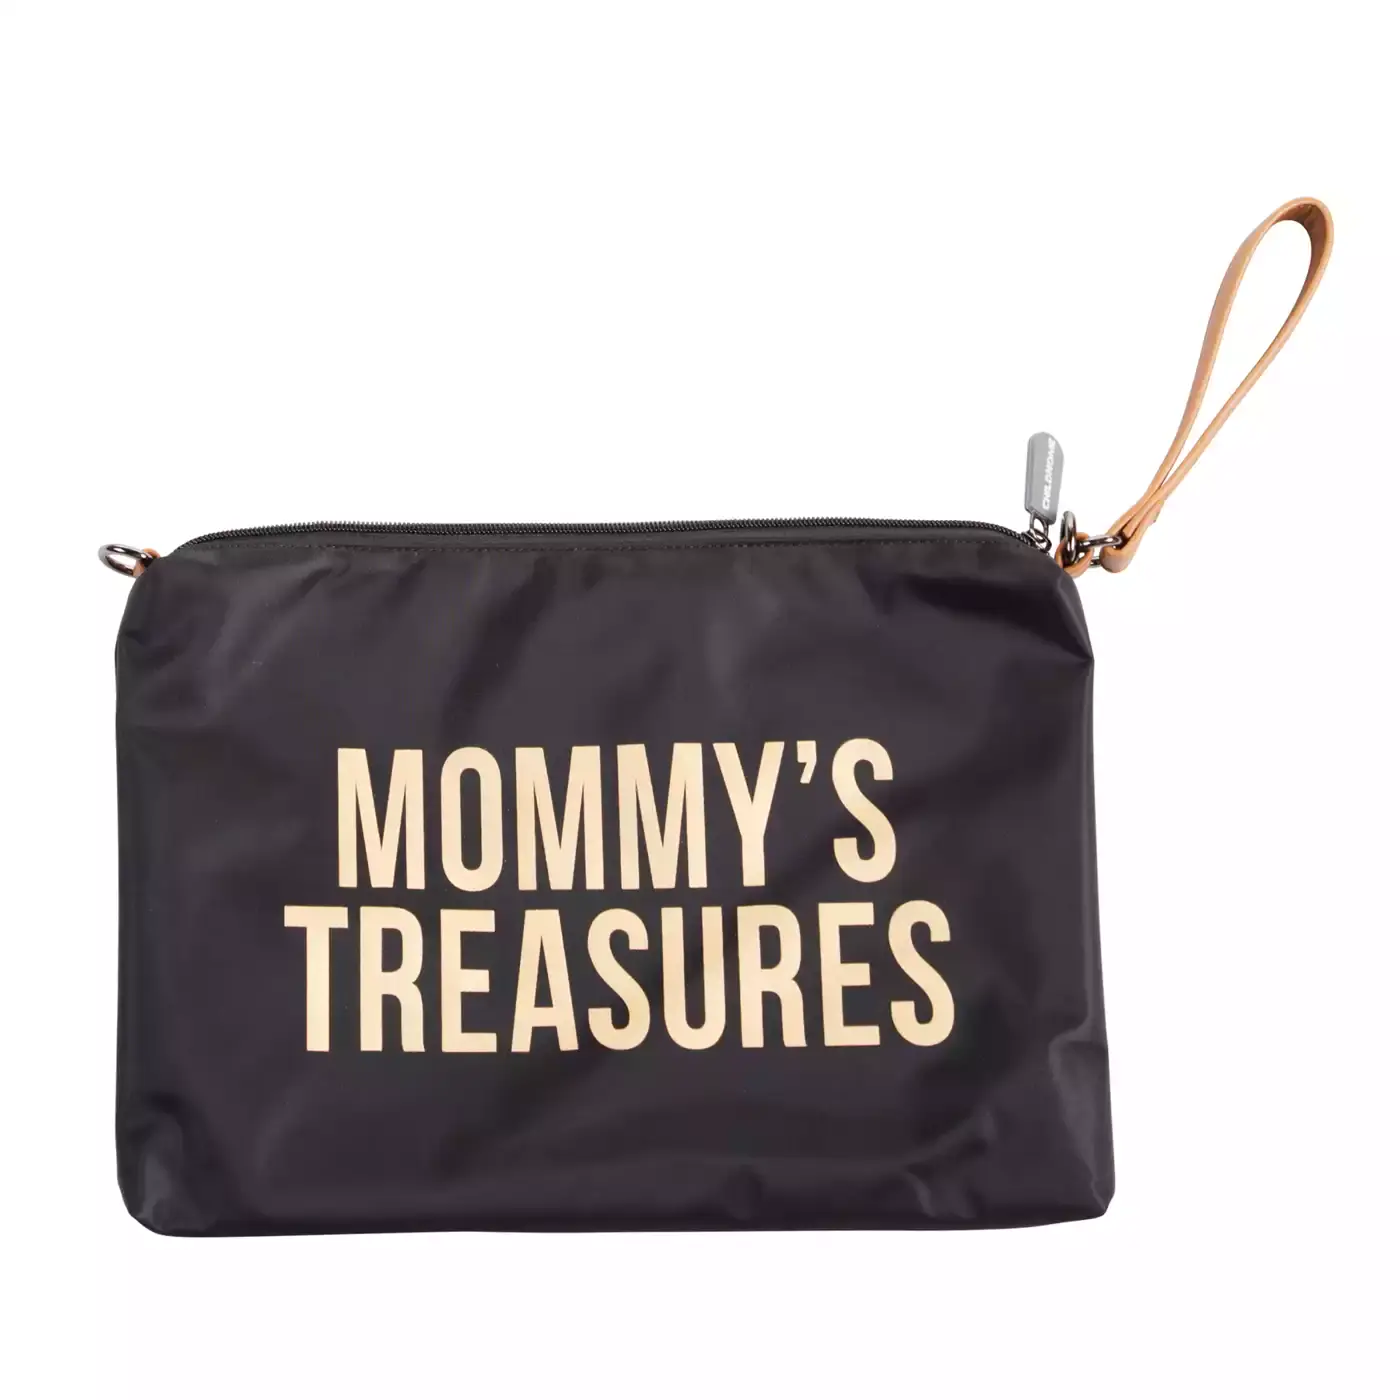 Mommy's Treasures Clutch CHILDHOME Gold Schwarz Gelb 2000580656169 1